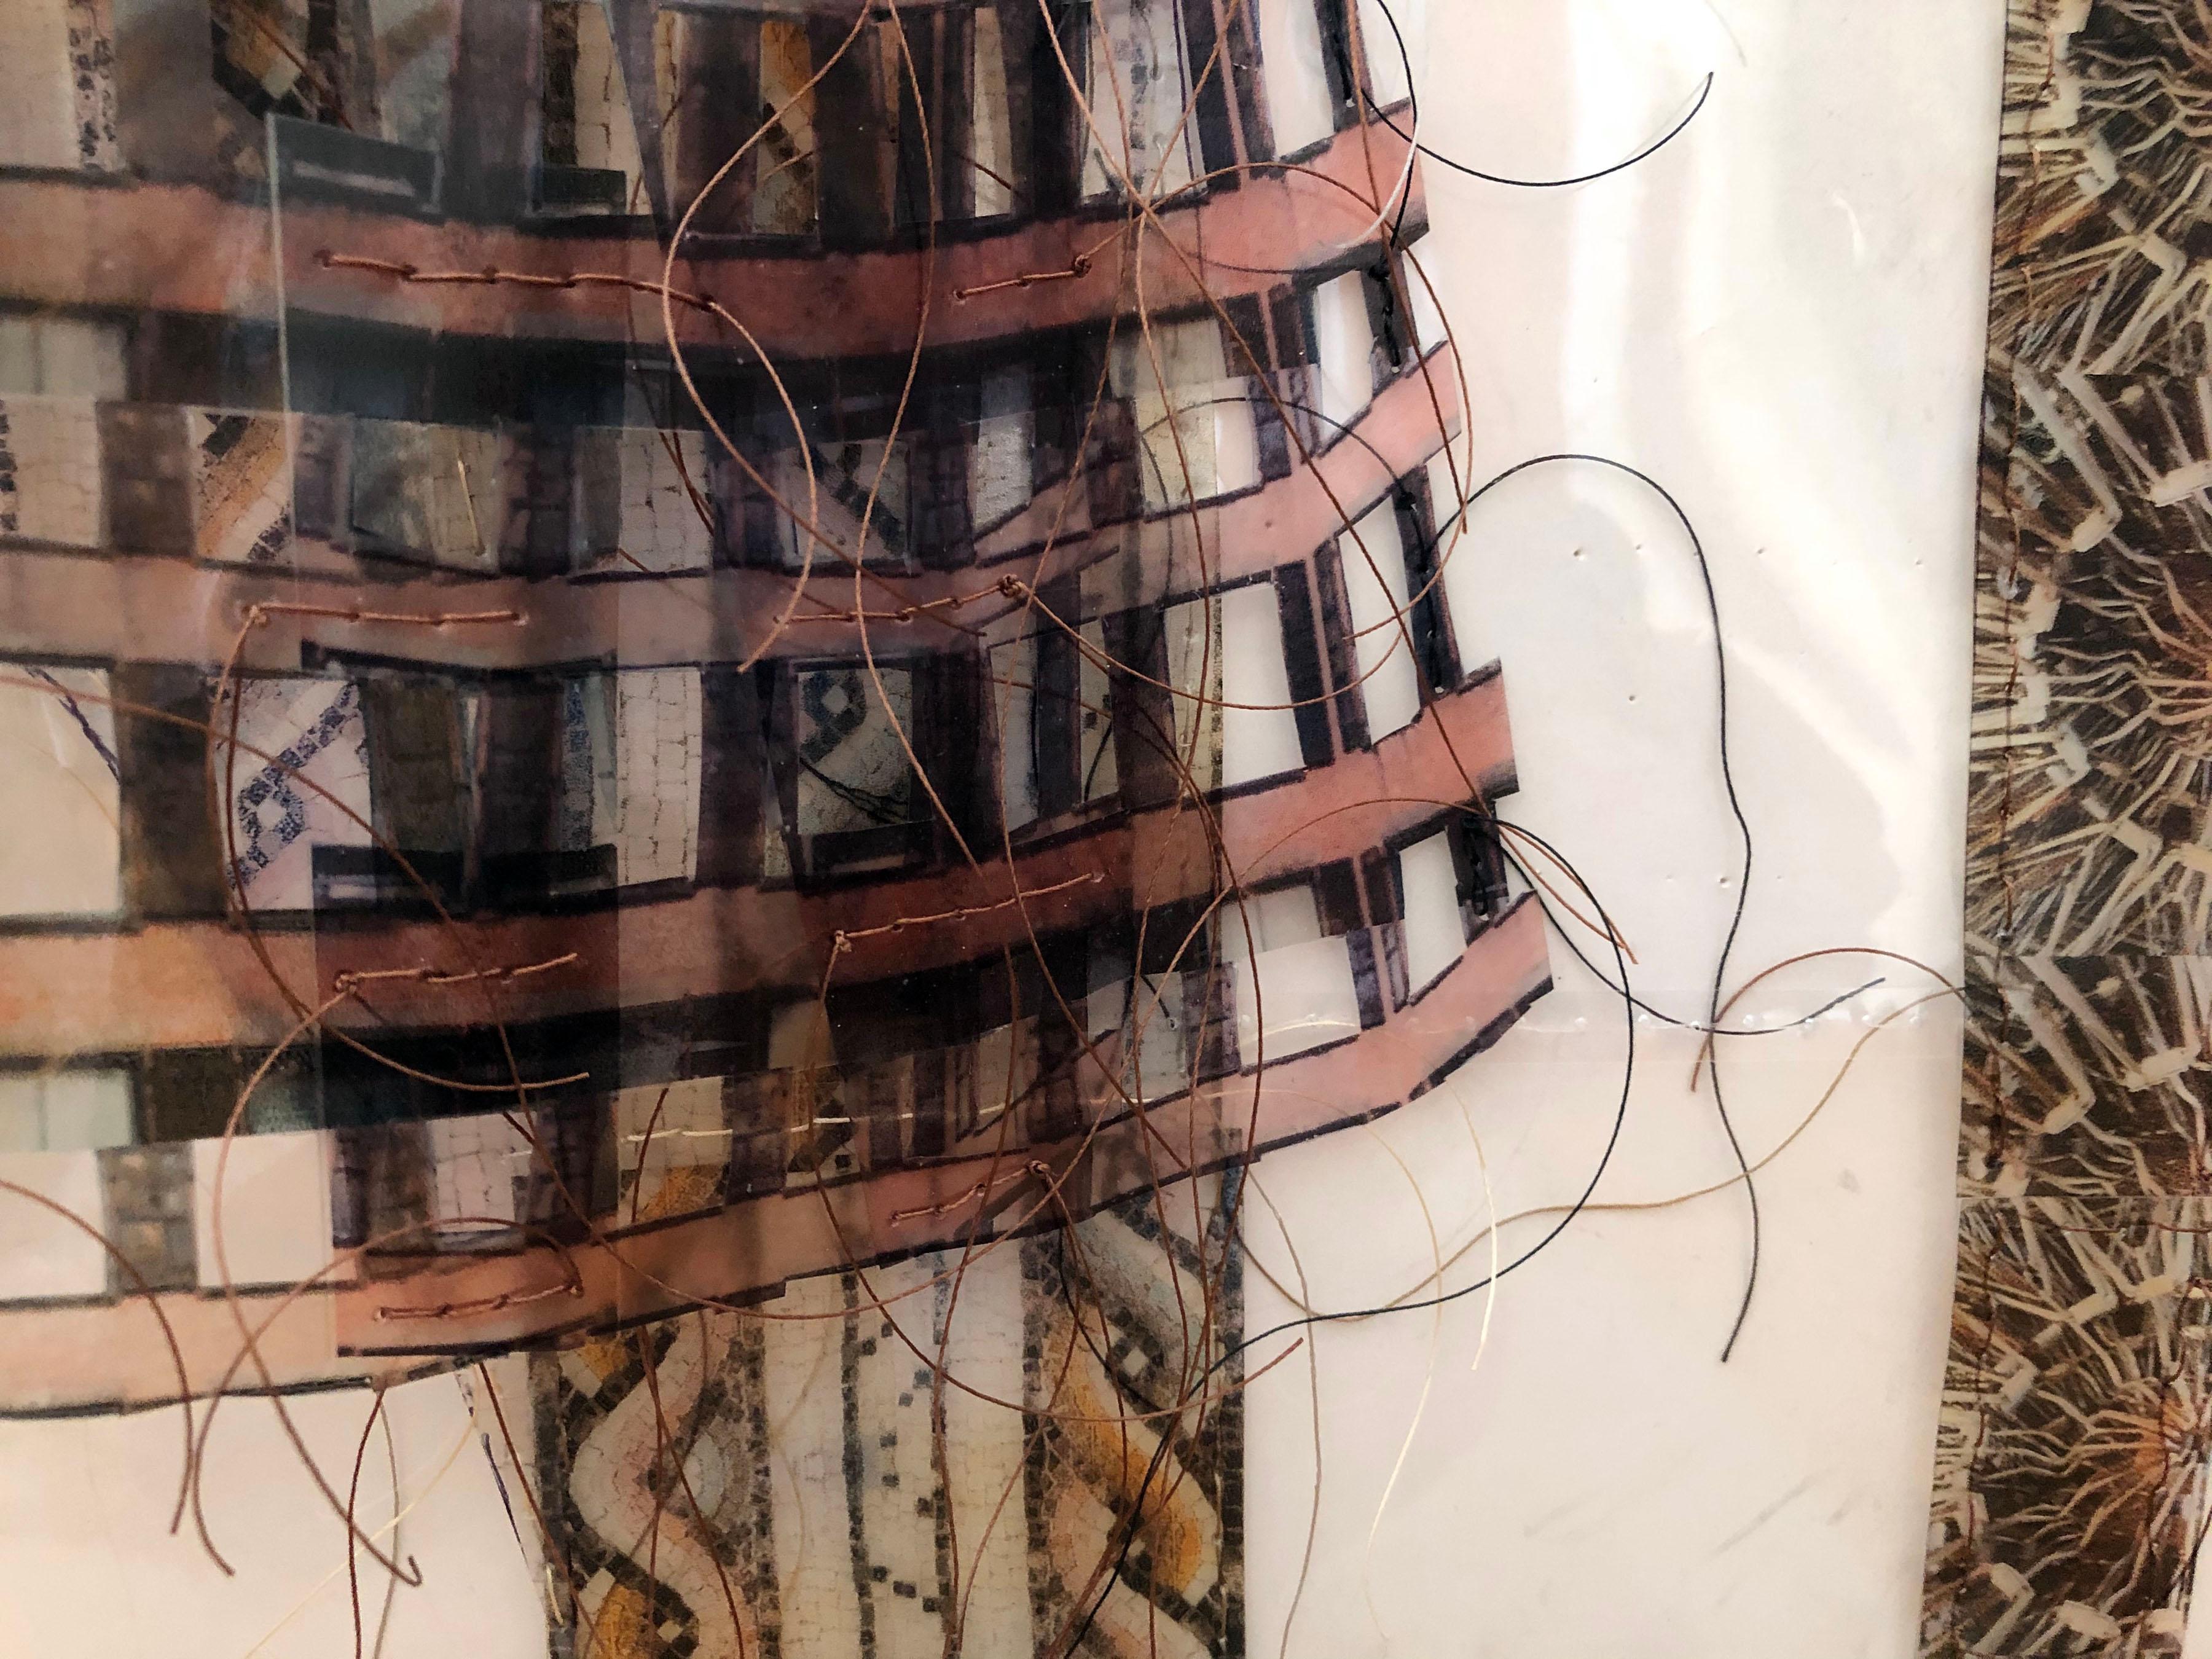 Suspenders and Leggings - Sculpture by Gwen Samuels